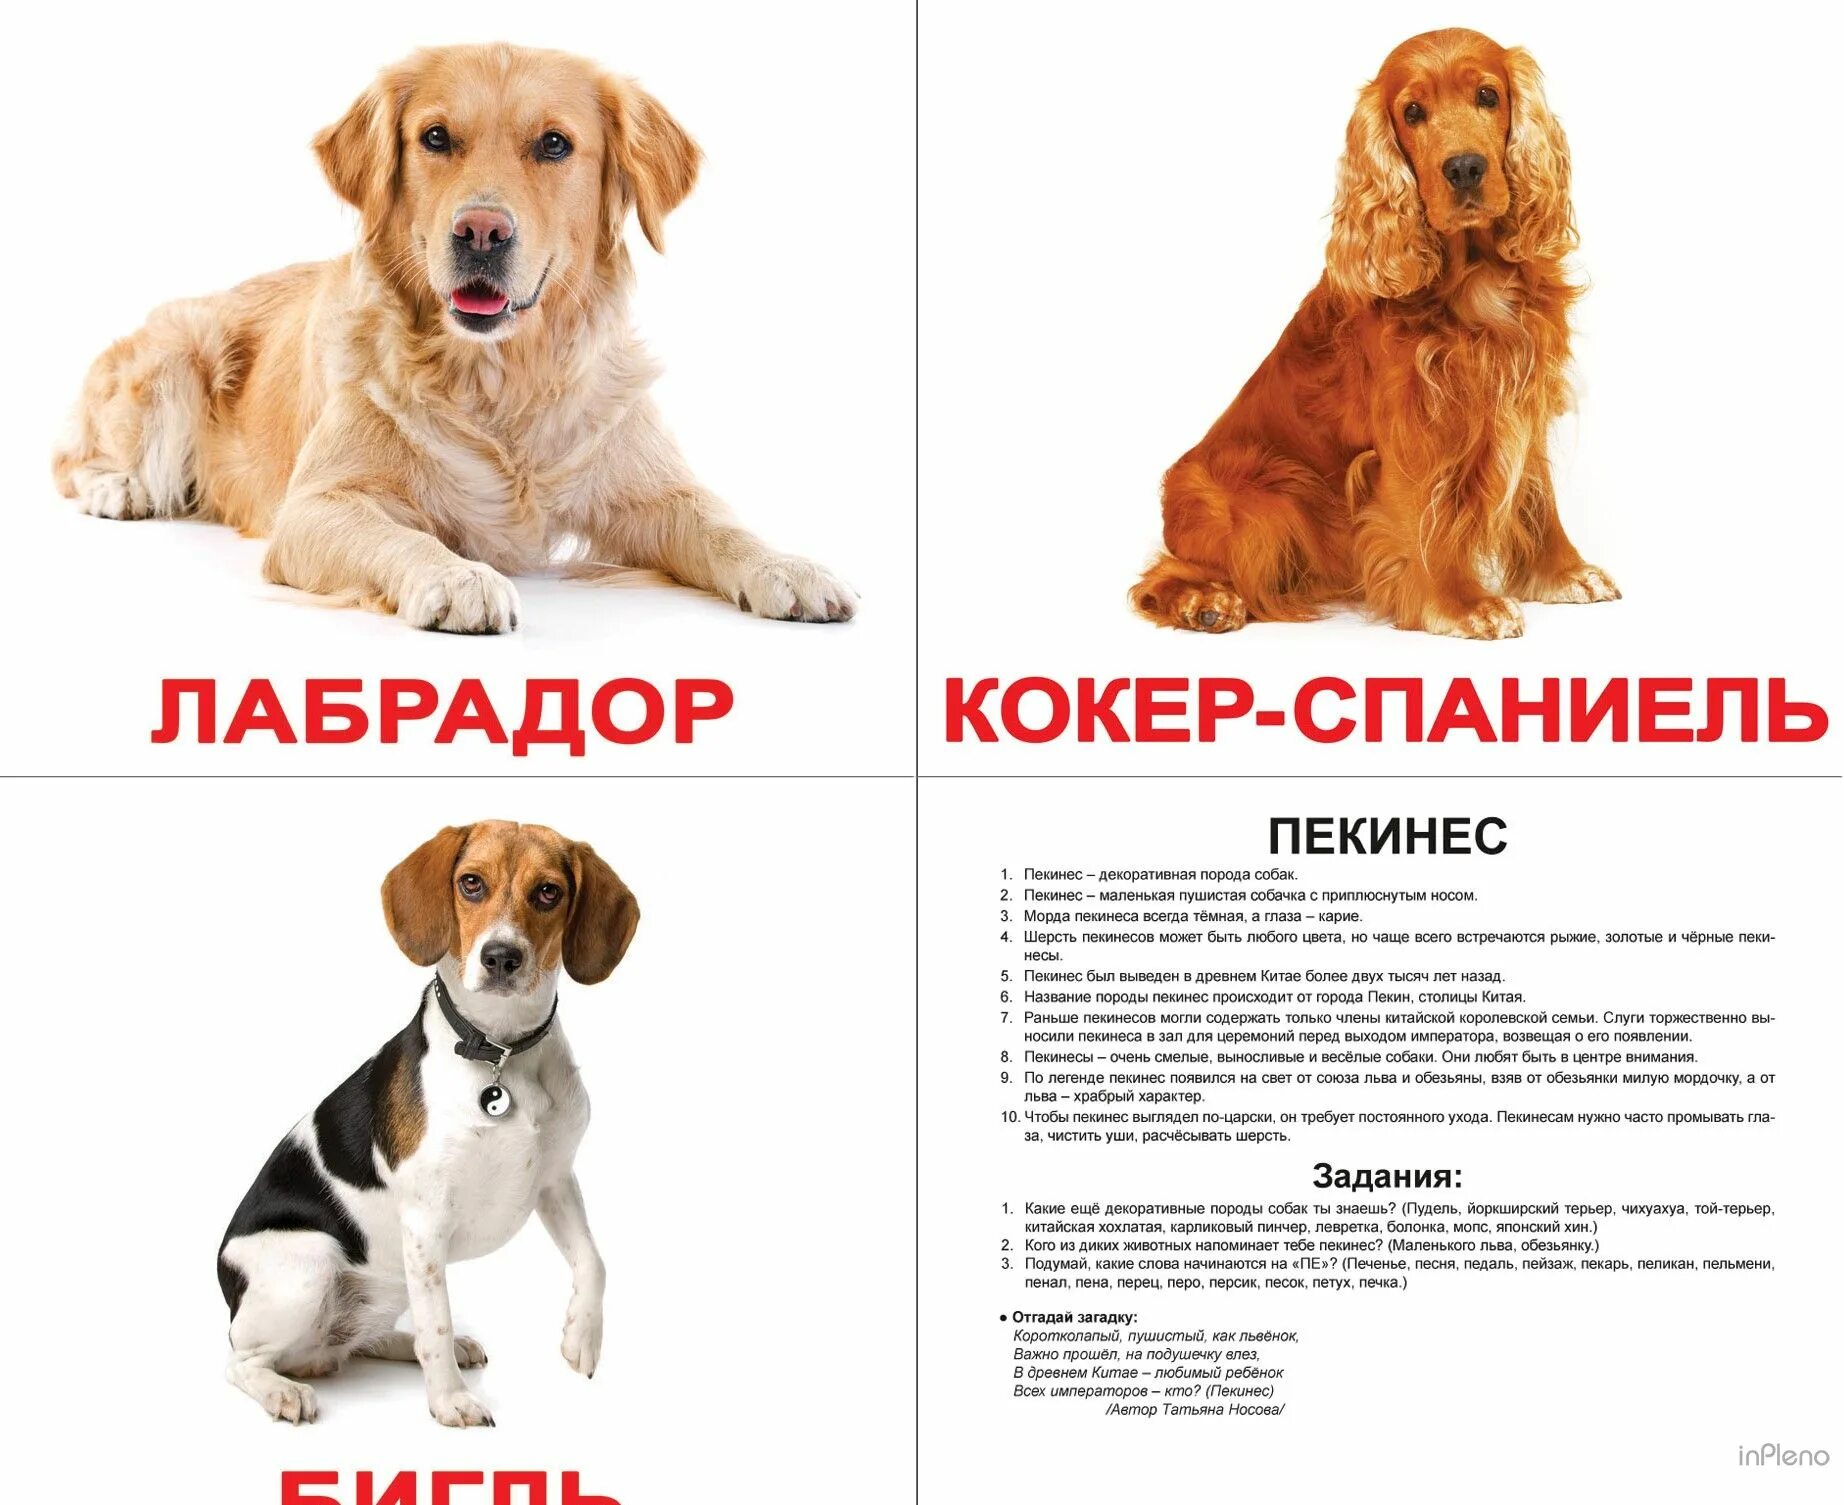 Породы собак названия. Породы собак карточки. Карточки Домана собака. Карточки с породами собак для детей. Собака карточка для детей.